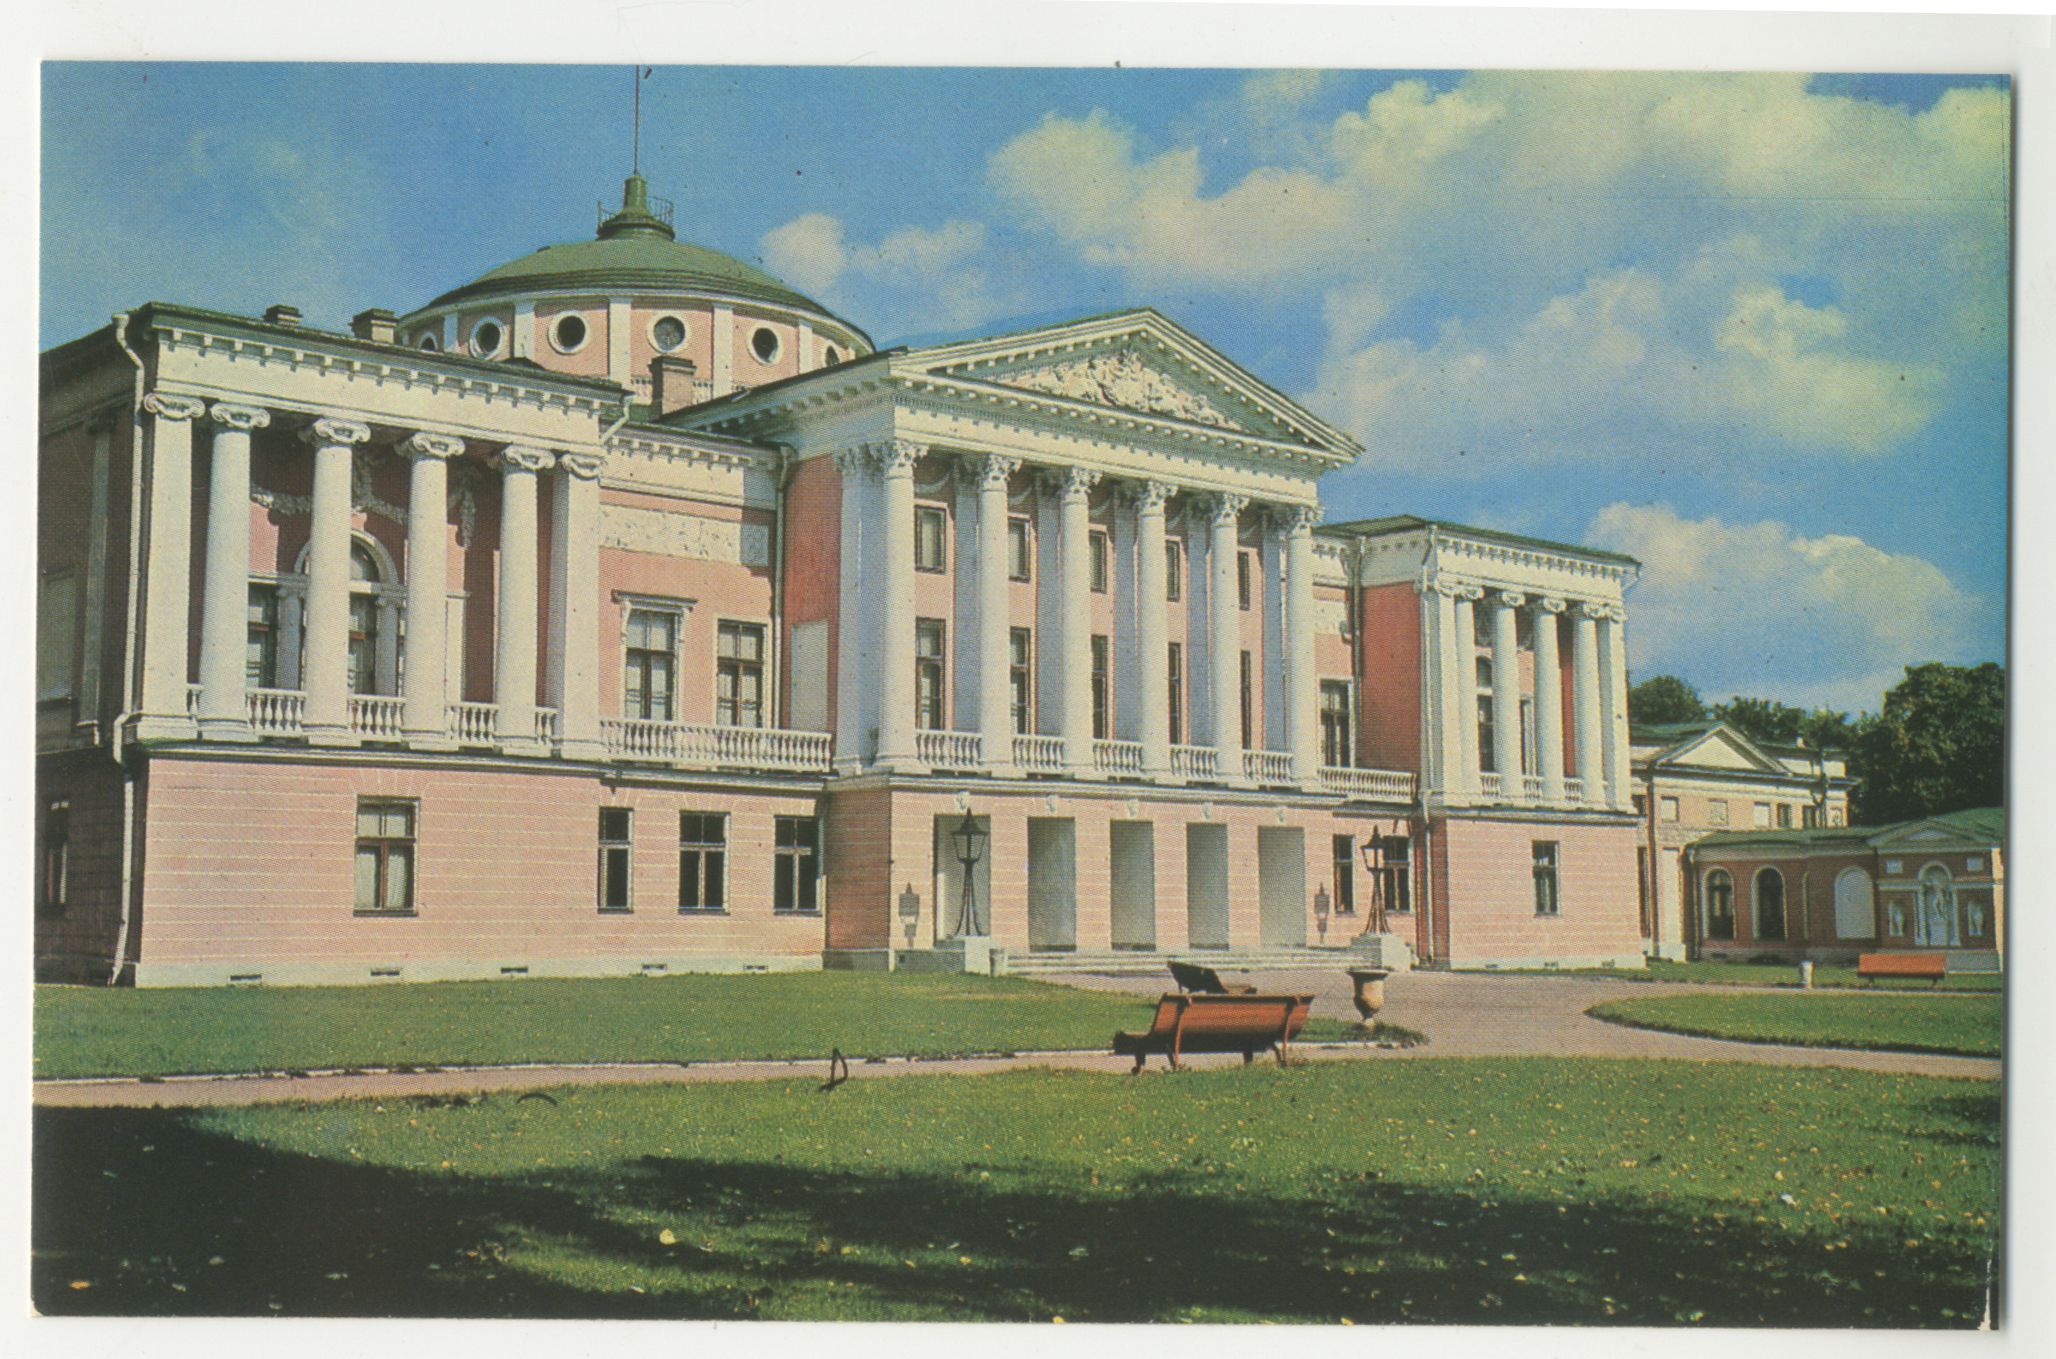 Шереметьевский дворец москва